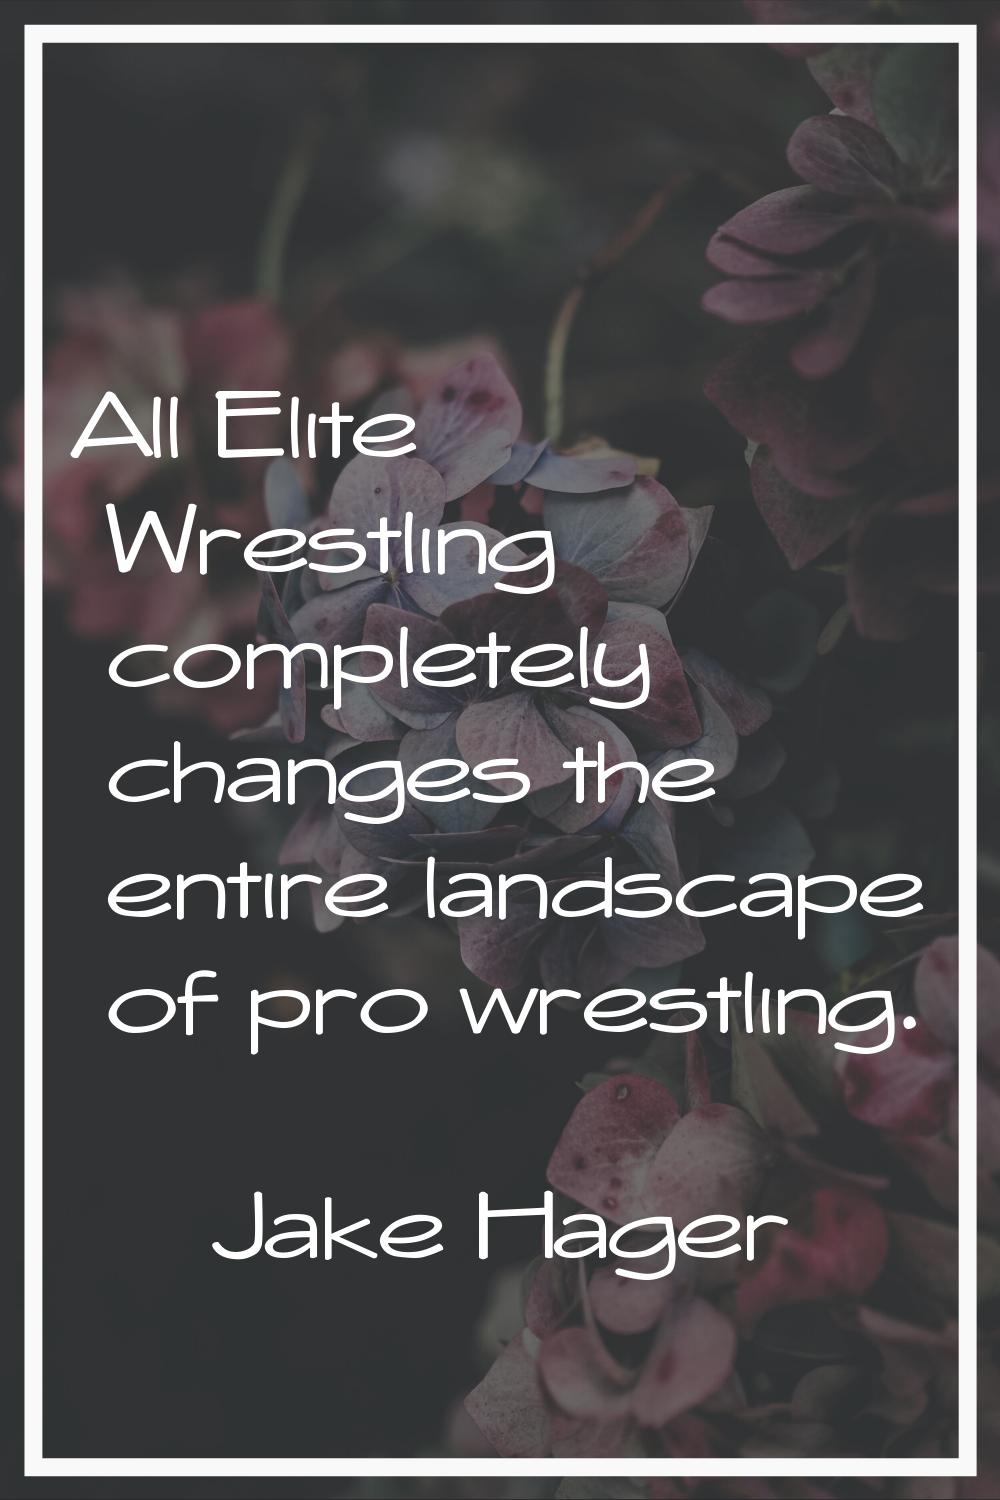 All Elite Wrestling completely changes the entire landscape of pro wrestling.